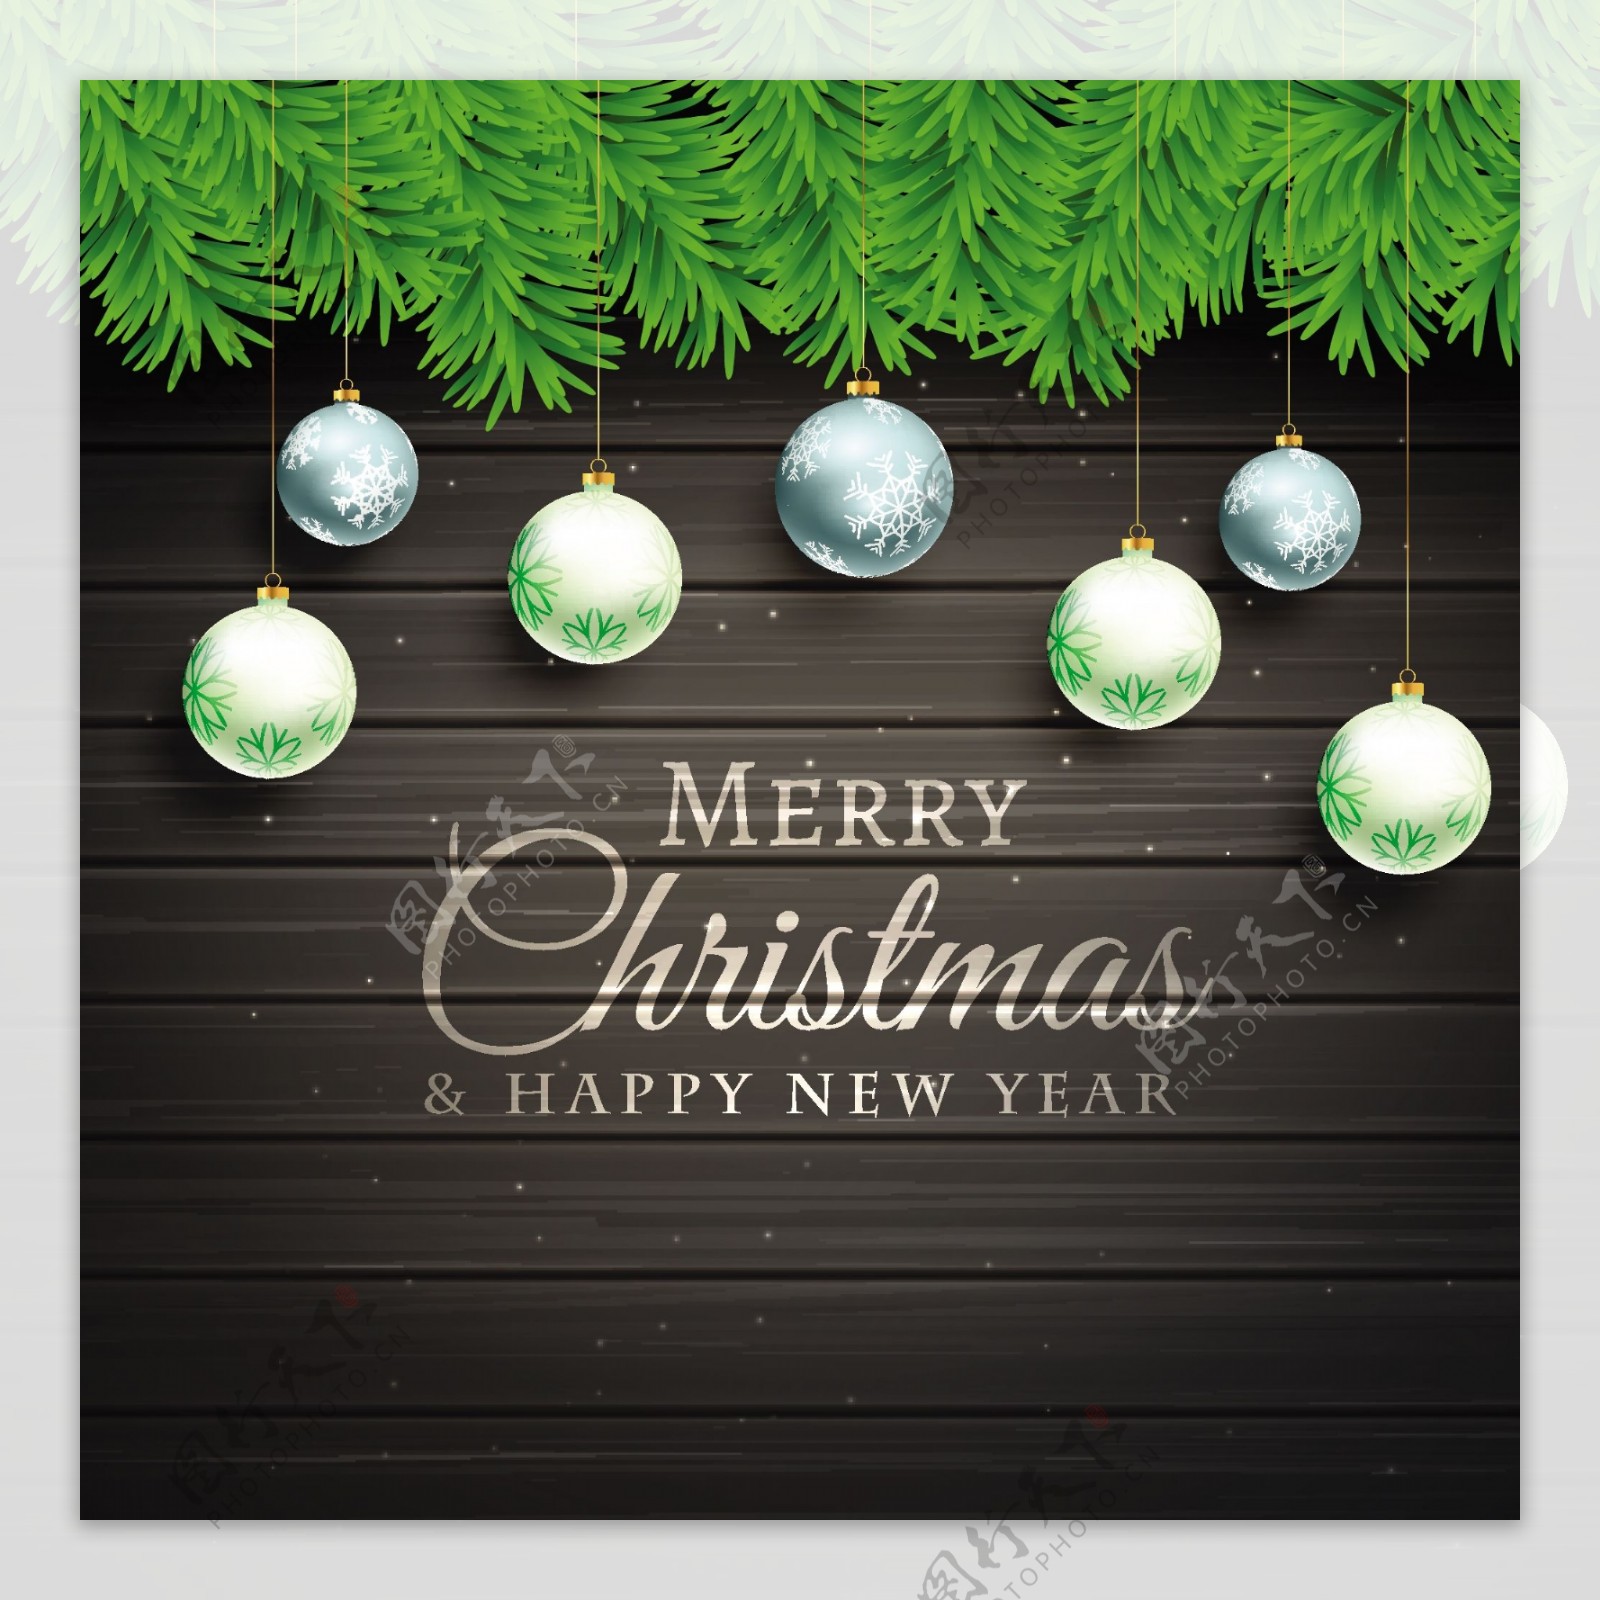 精美圣诞吊球和黑色木板背景贺卡矢量素材